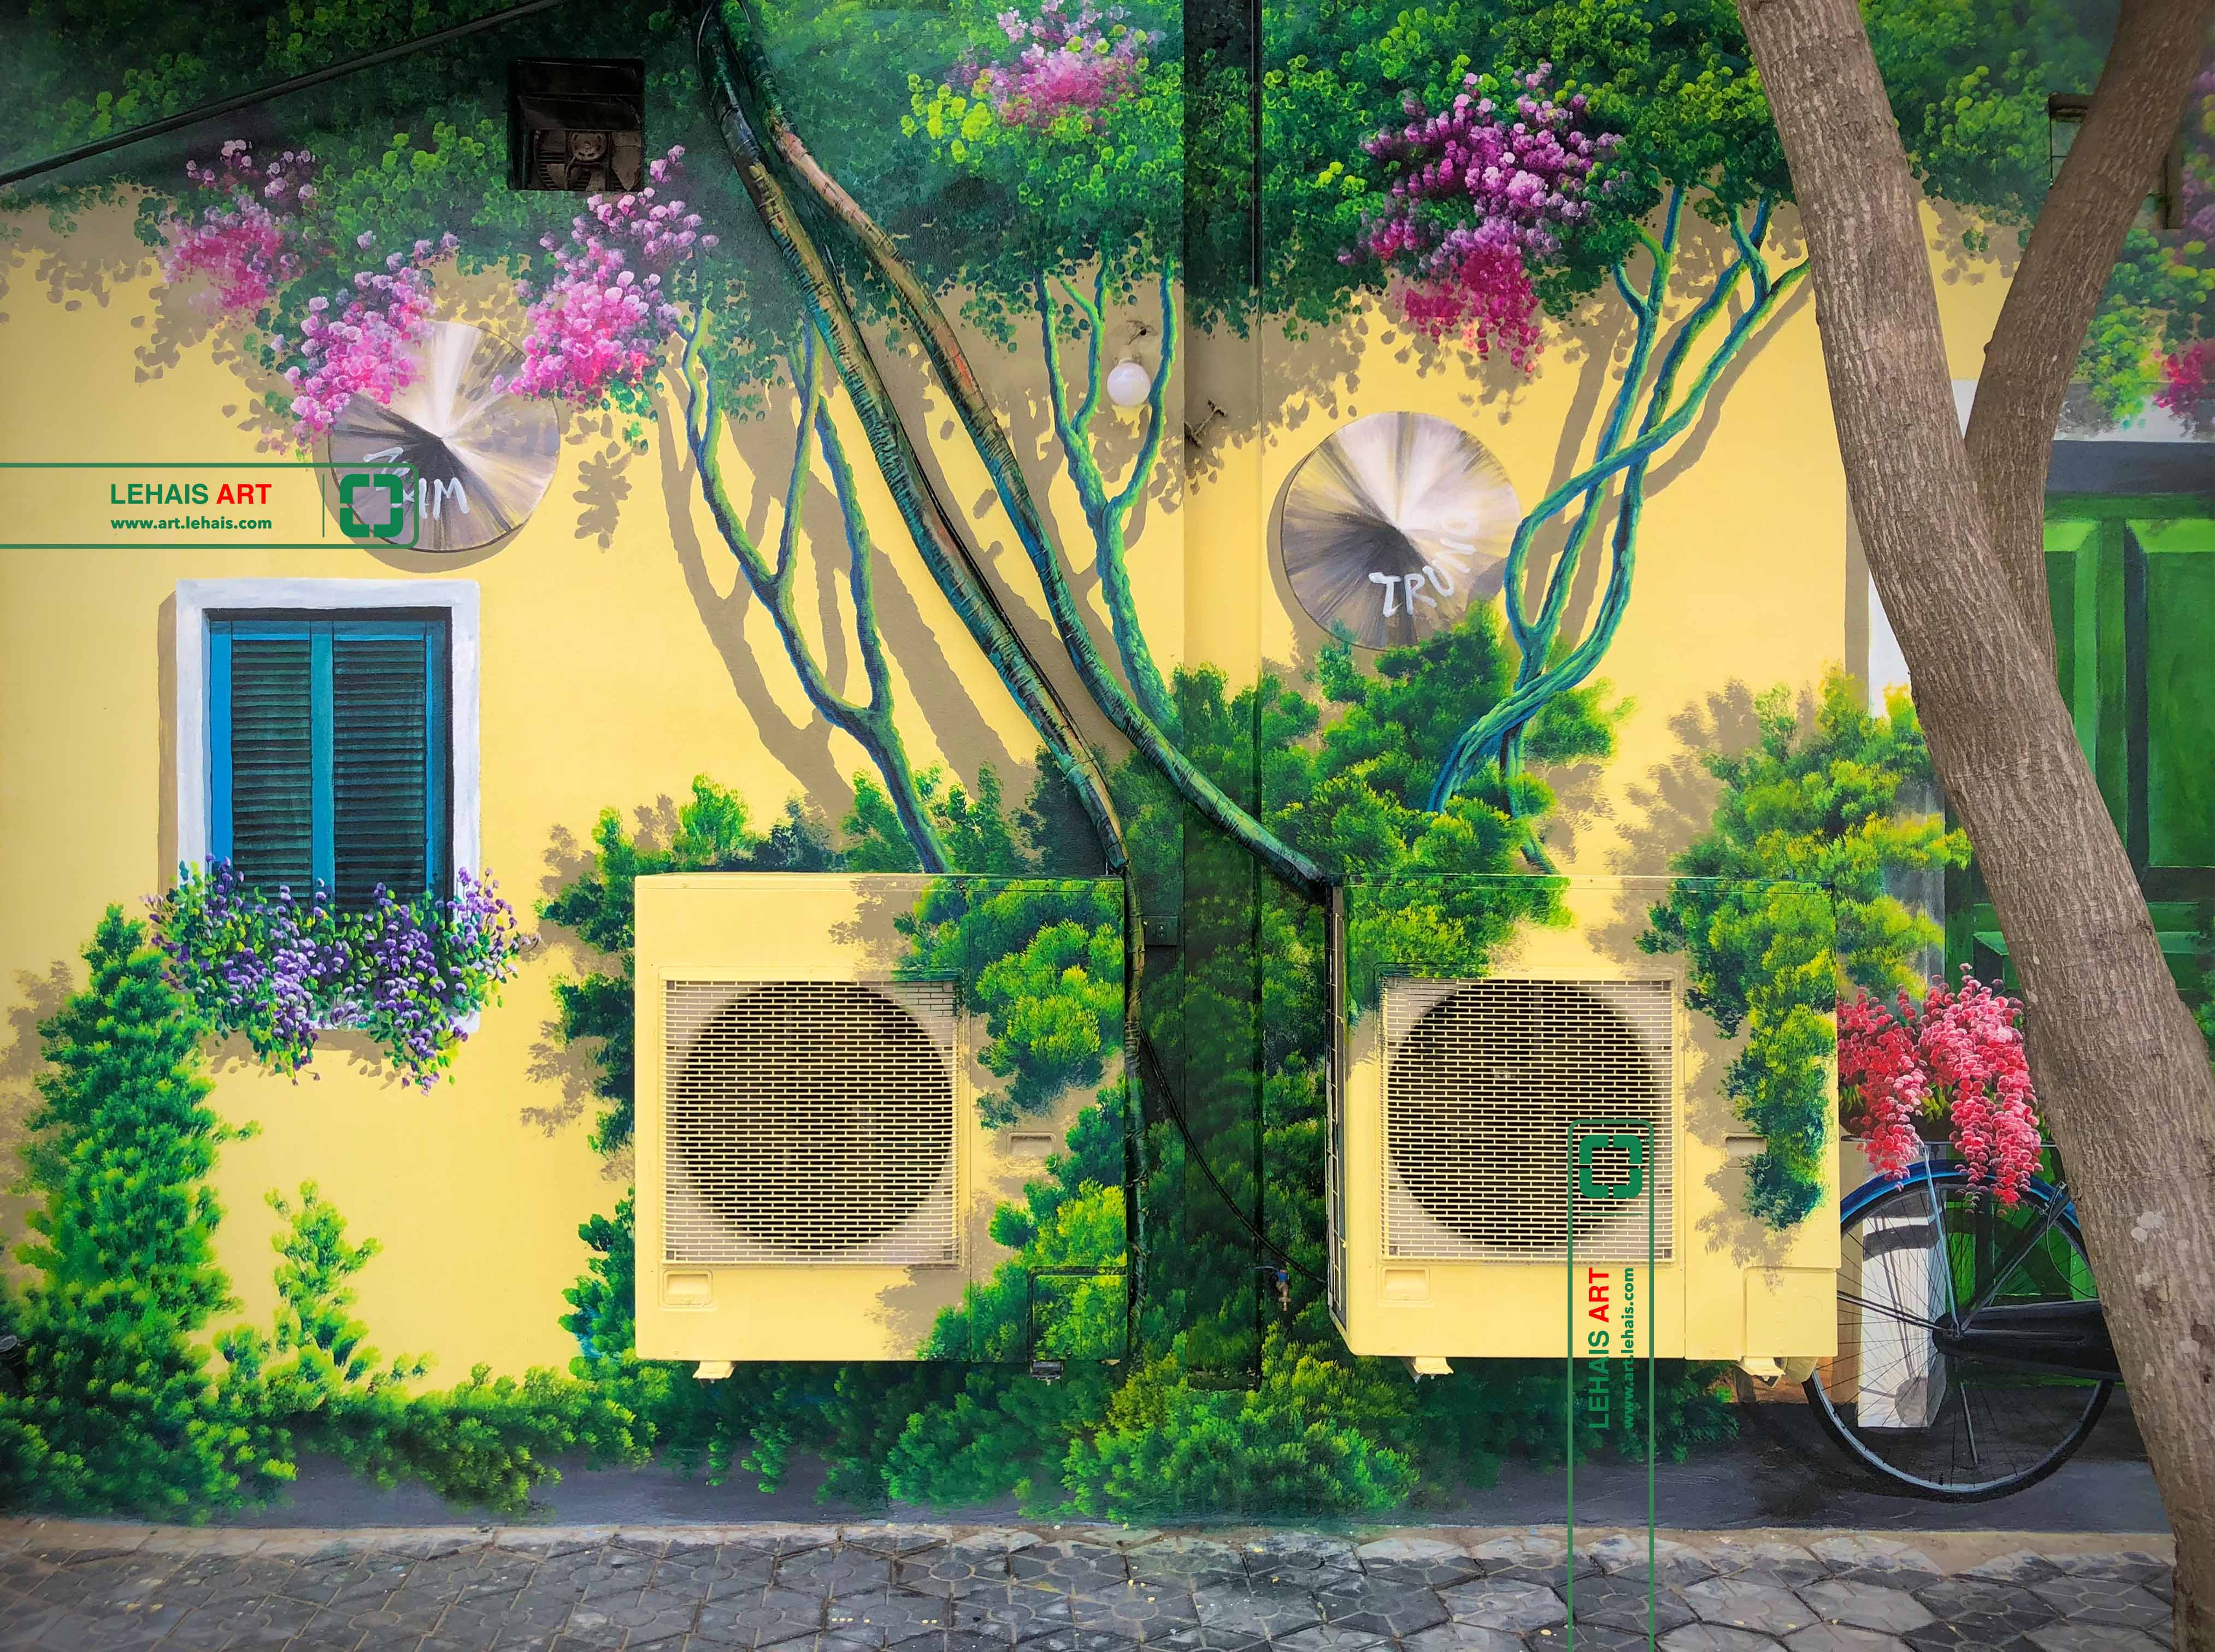 Vẽ tranh 3D trang trí tường tại nhà Hàng Hùng Tàu ở Phố Nối, Hưng Yên - TT198LHAR